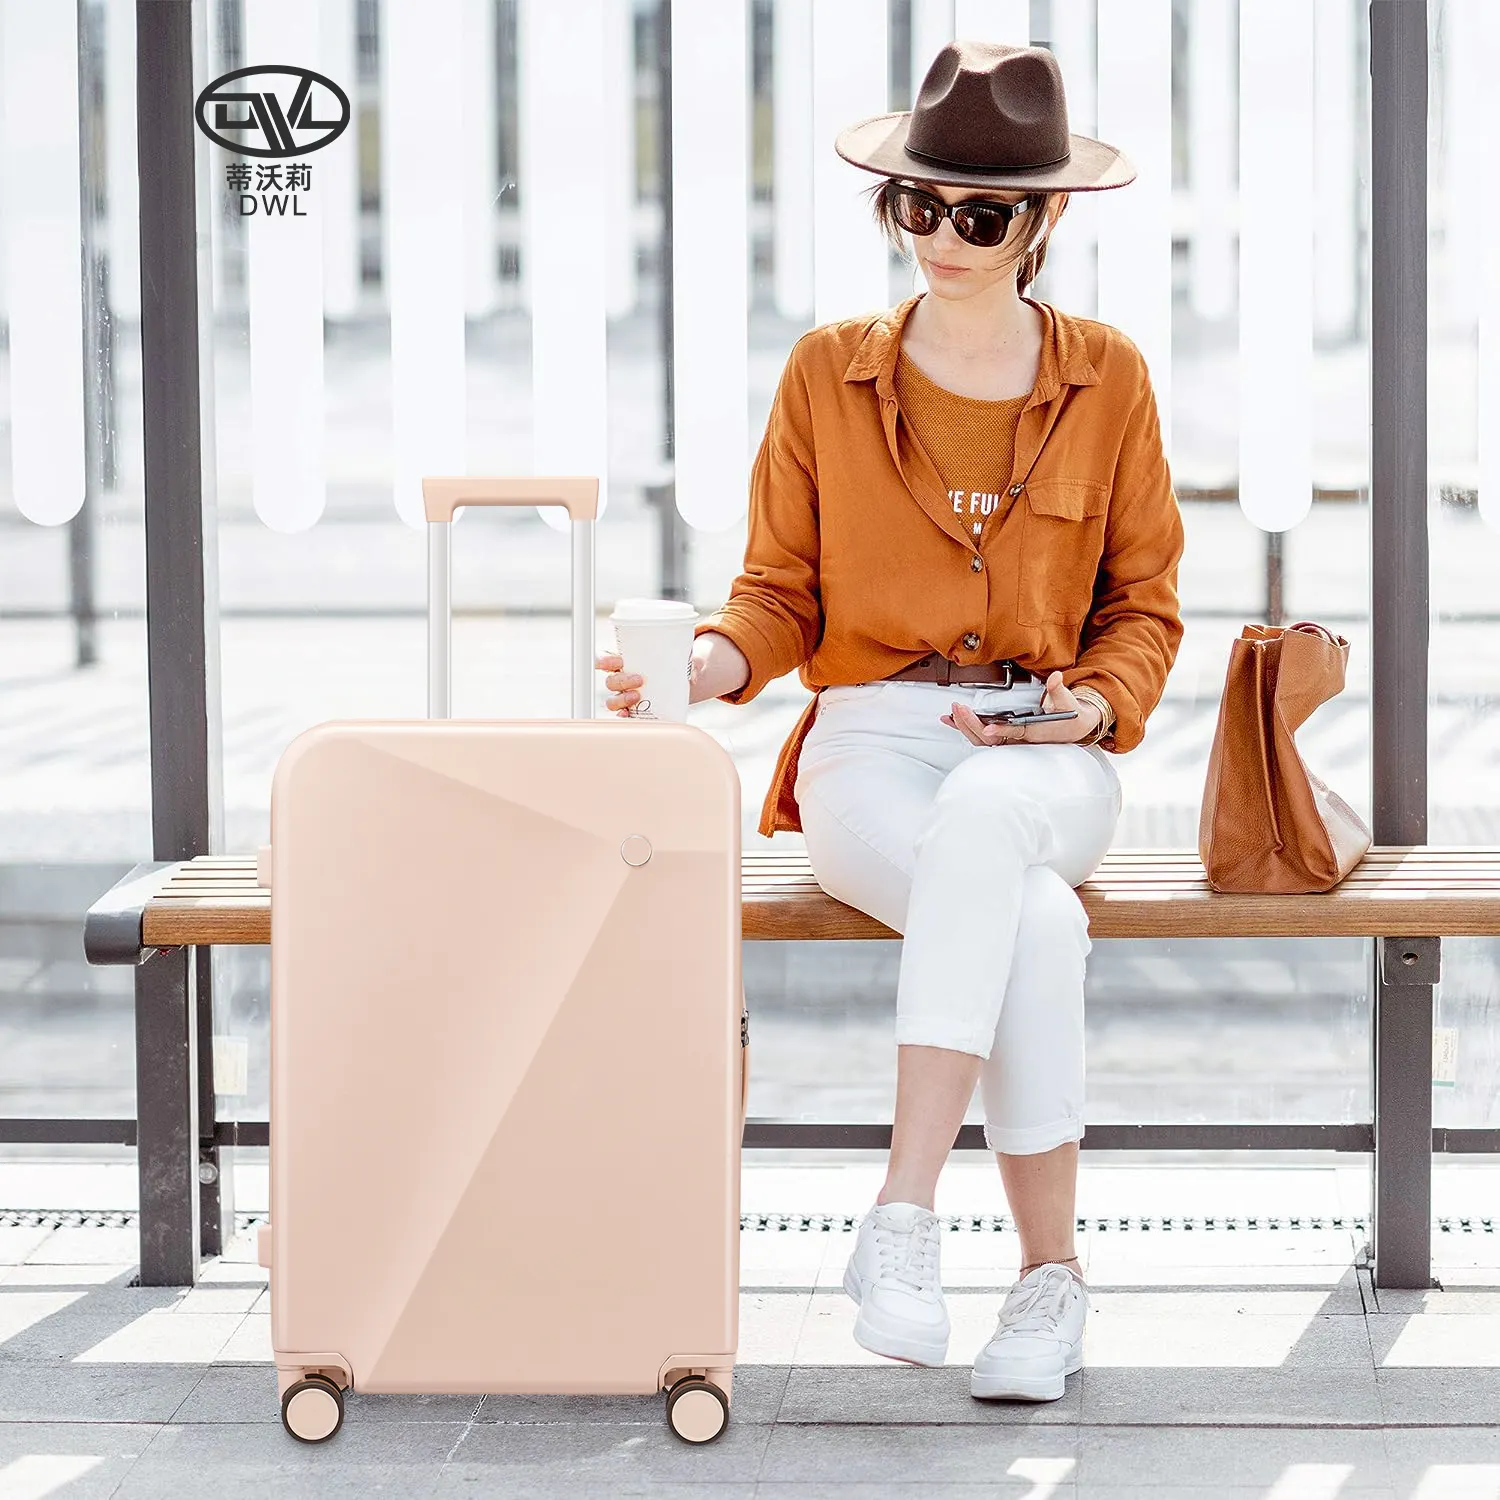 Dongguan DWL personnalisé mode léger Koffer 2 pièces bagage à roulettes sacs bagages valise de voyage ensemble pour voyage d'affaires